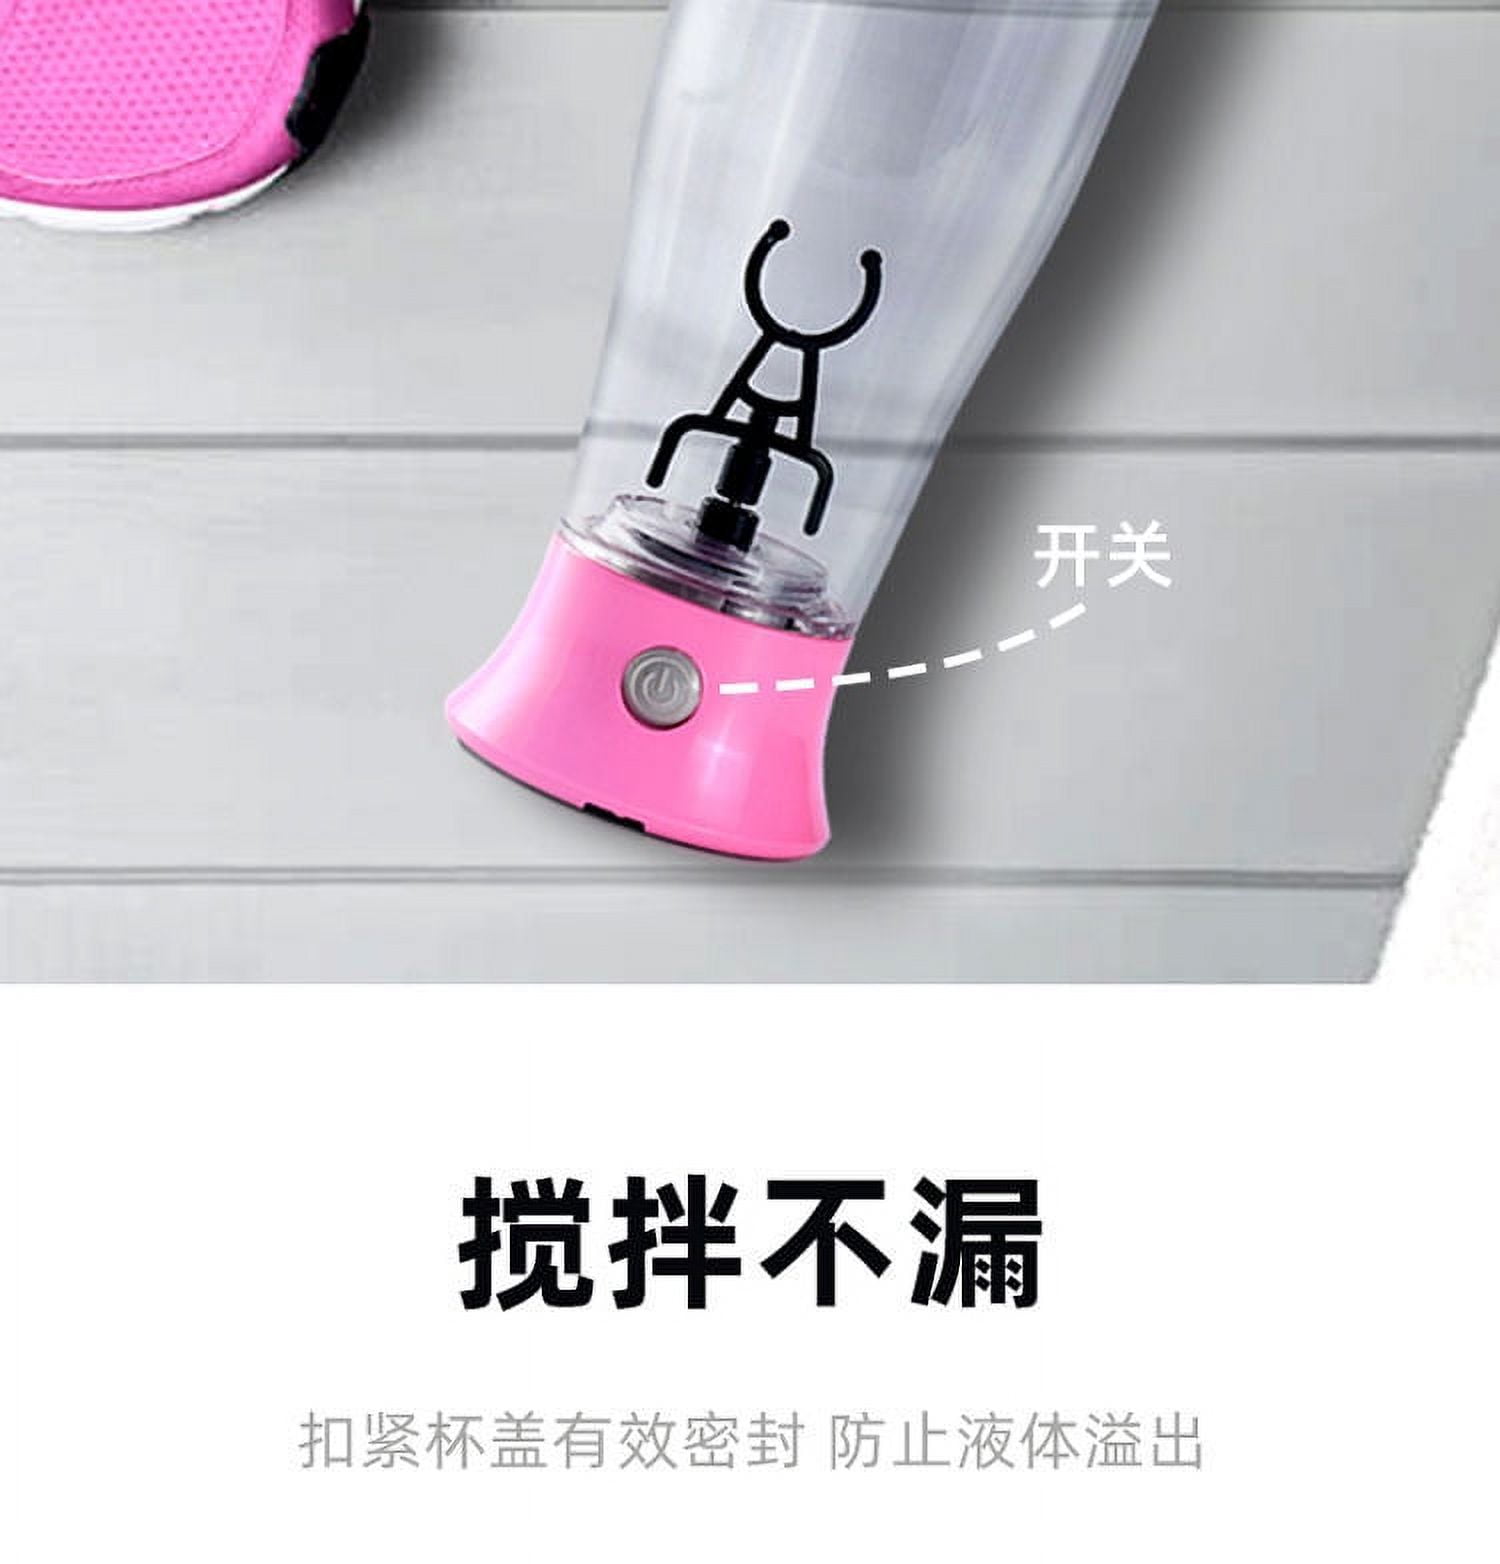 XS® Energy Blender Bottle Shaker - Neon Green/Purple/Pink - AmwayGear